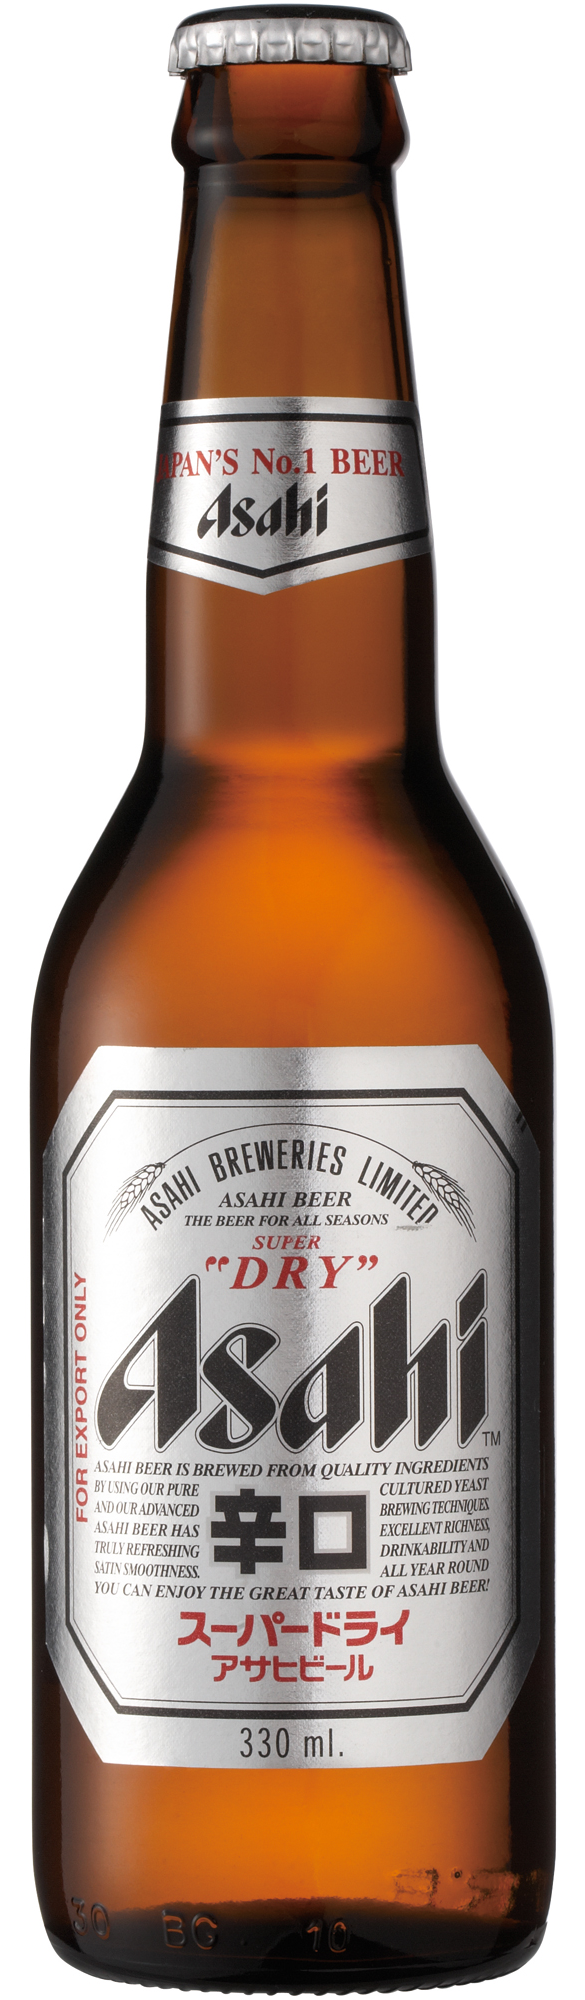 Produktbild von Asahi Breweries - Super Dry